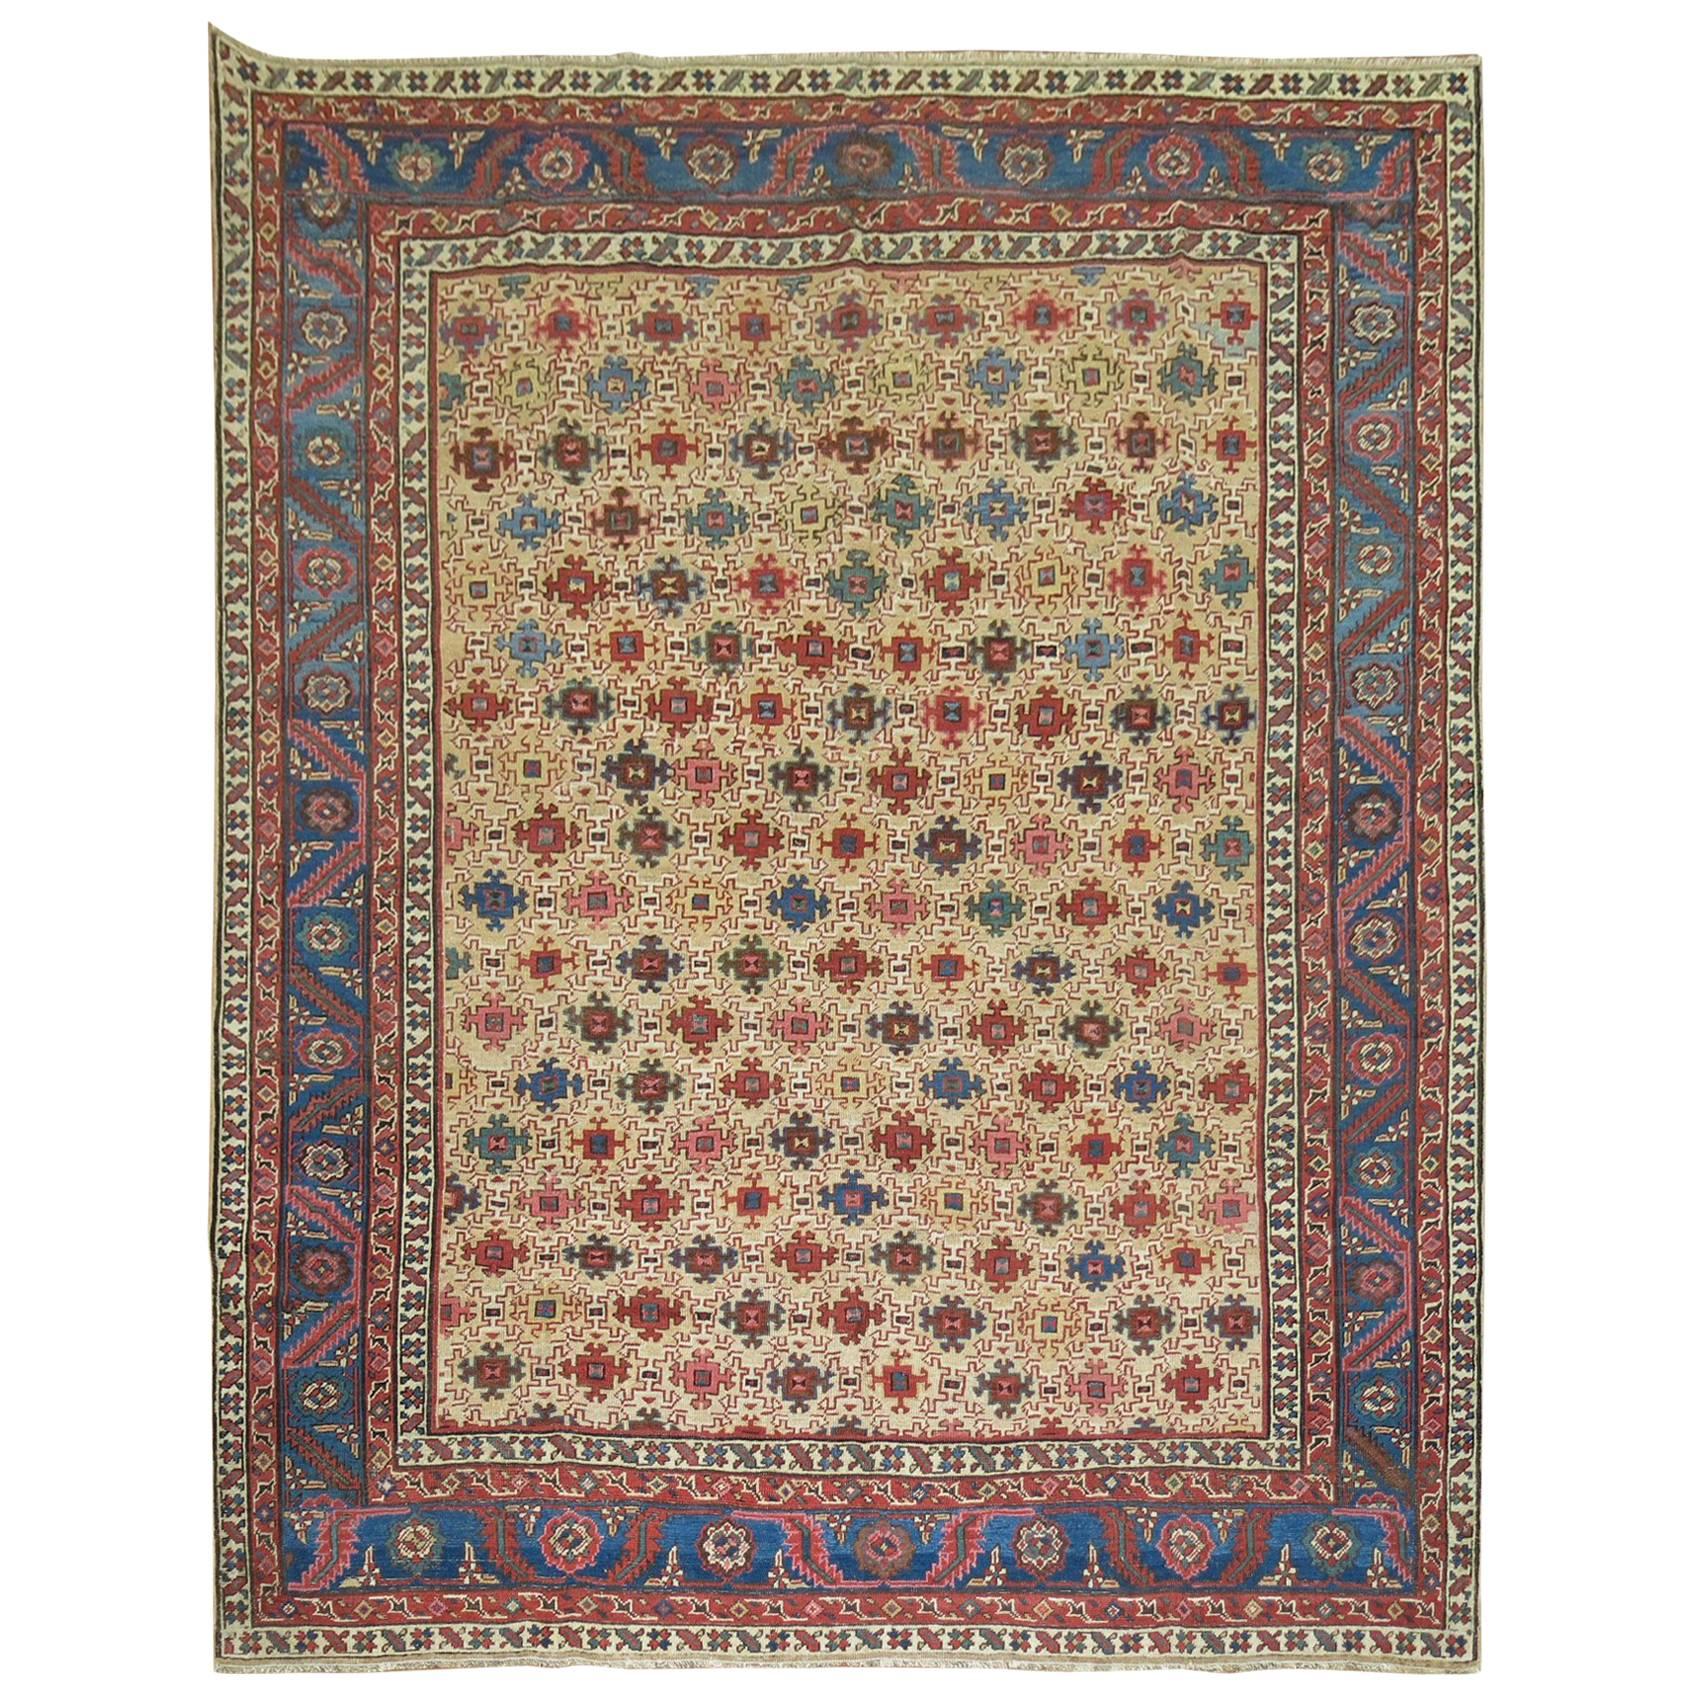 Antique Persian Square Bakshaish Rug